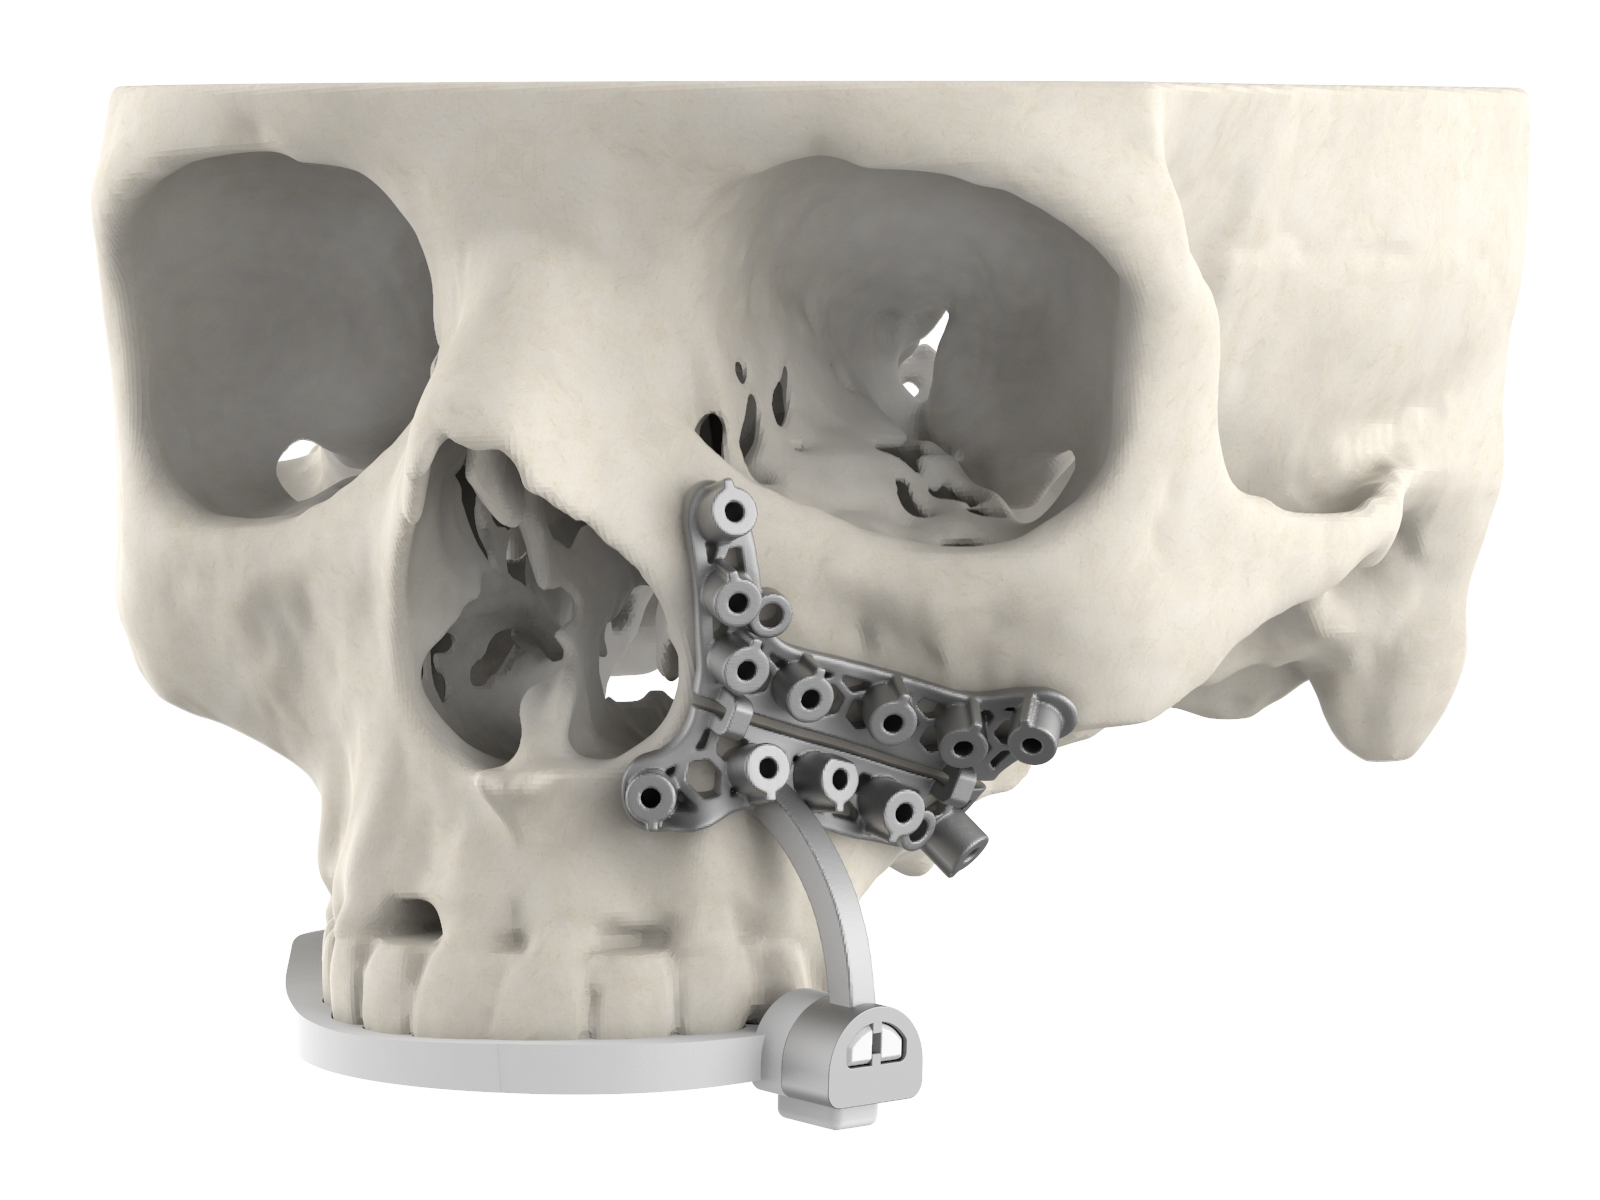 Une image du nouveau guide chirurgical de 3D Systems attaché à un crâne